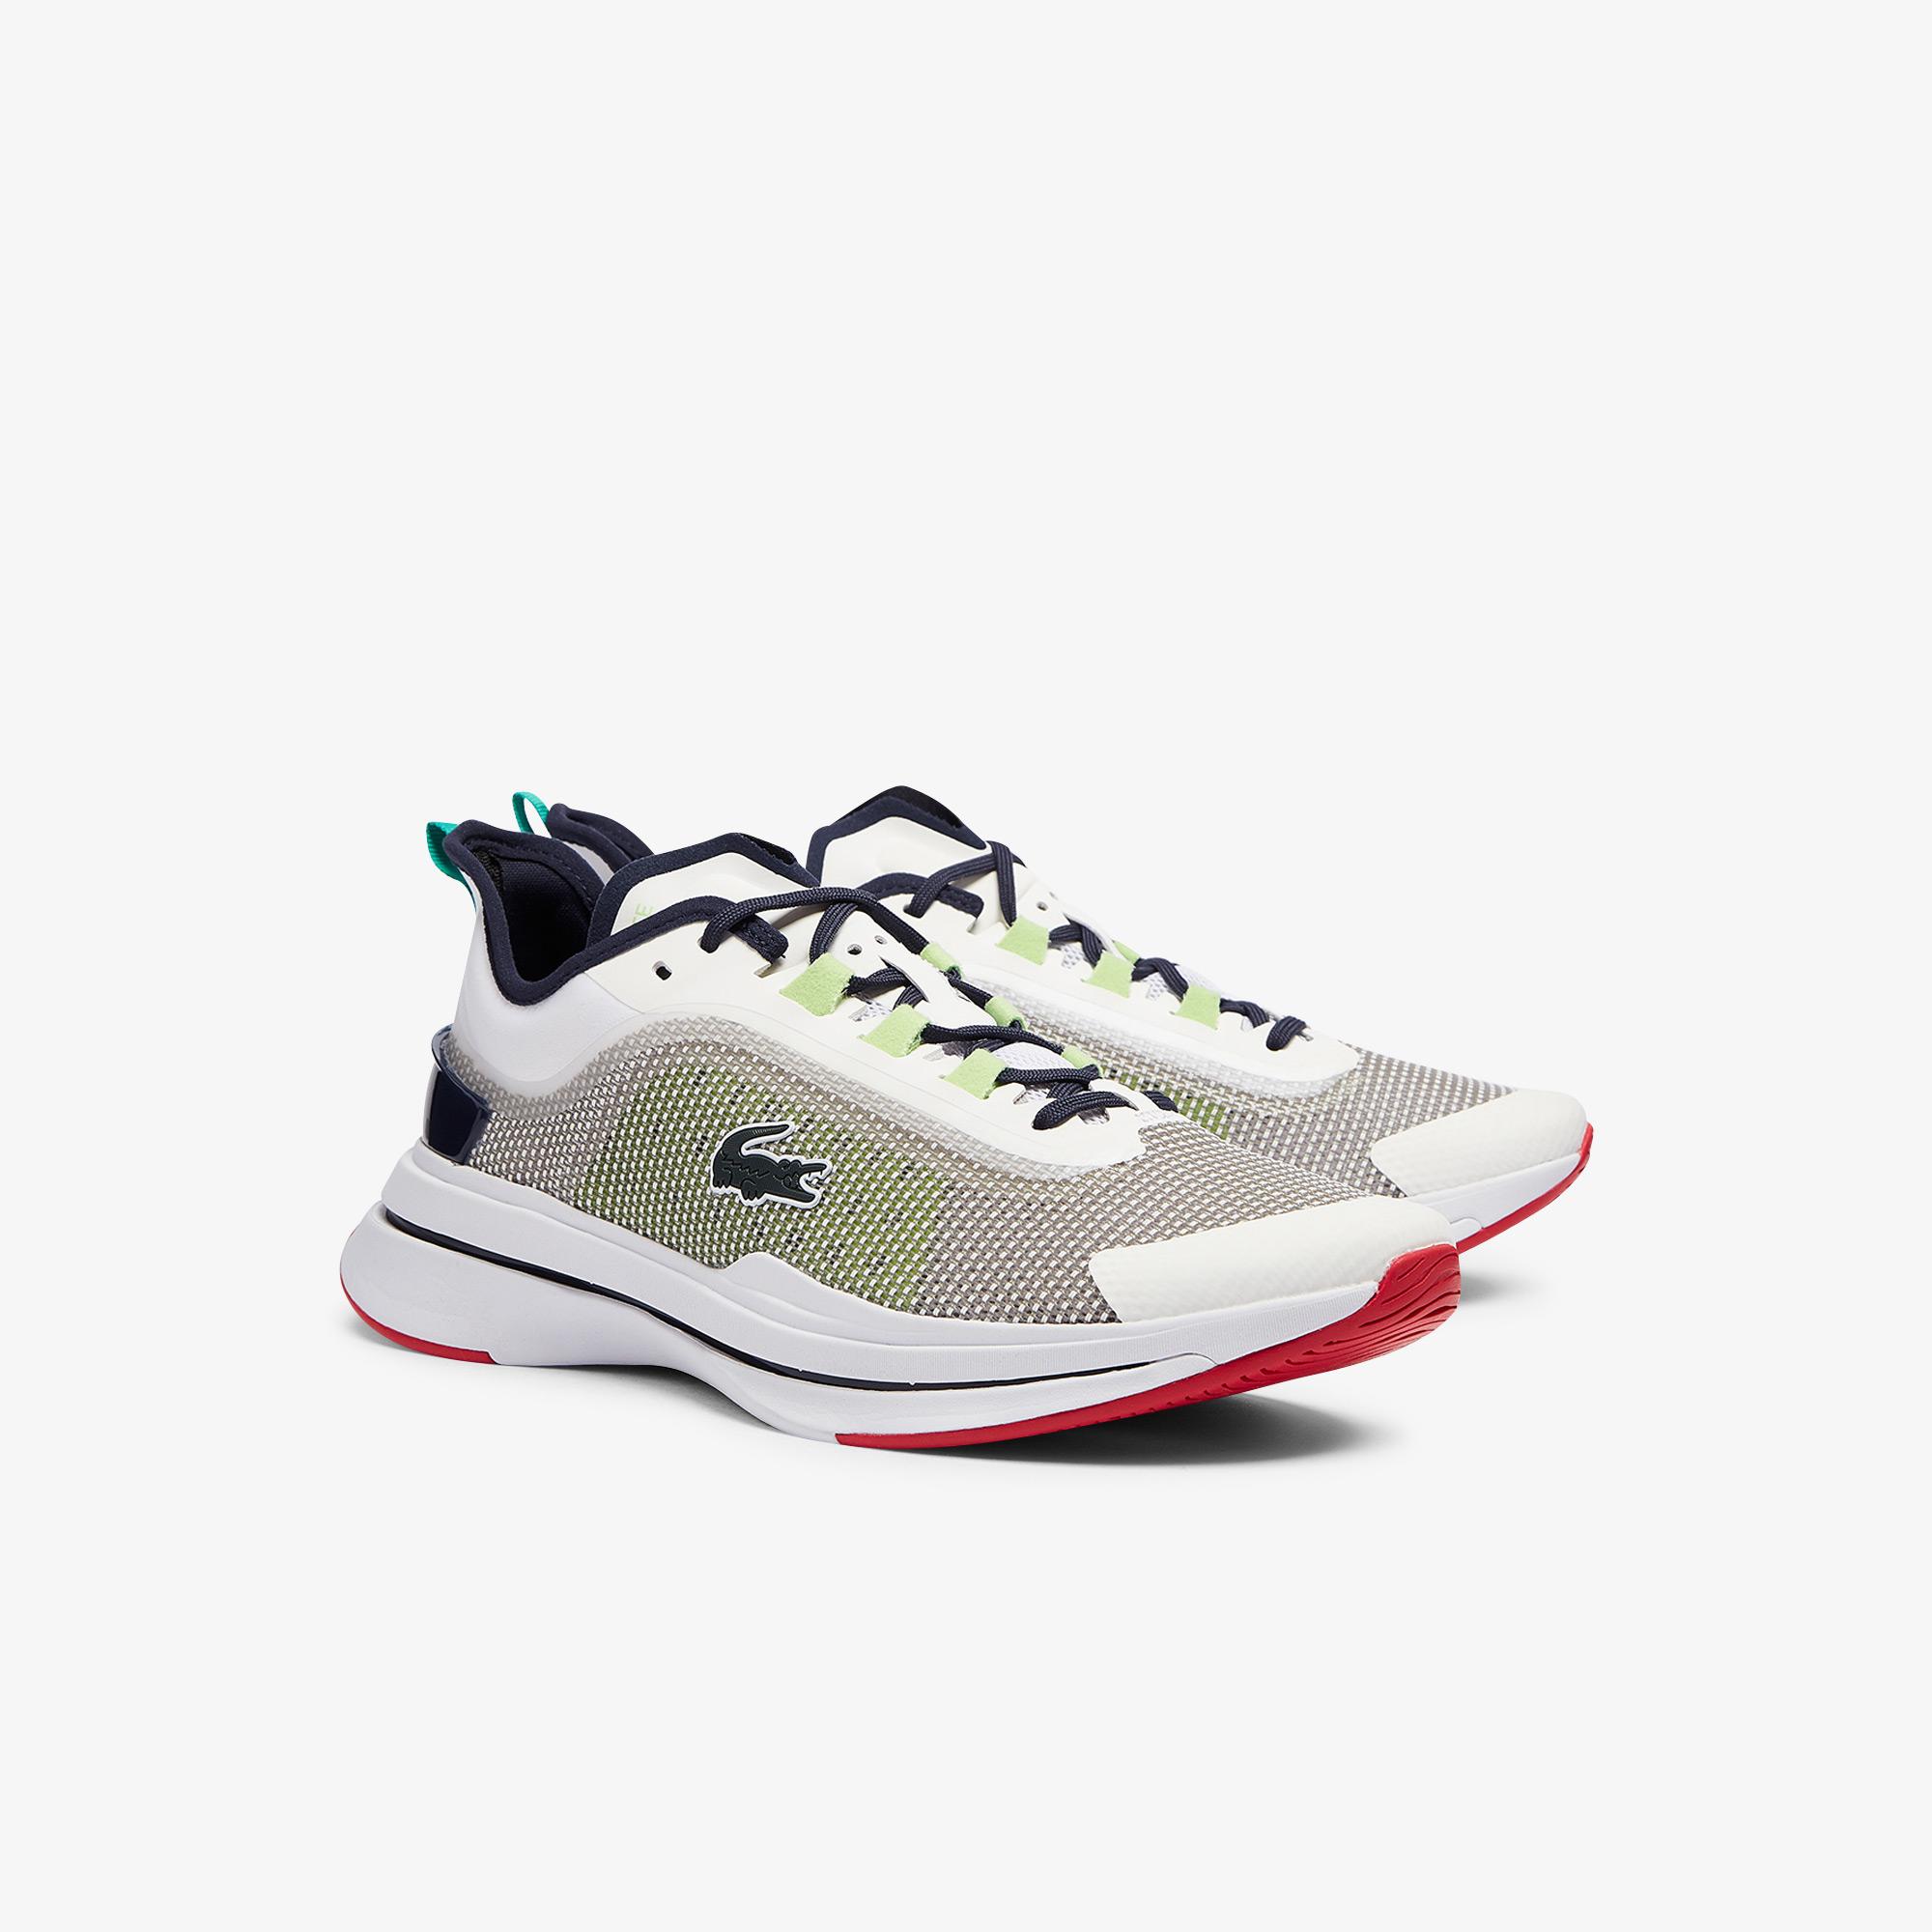 Lacoste Men's shoes Run Spın Ultra 0921 1 Sma